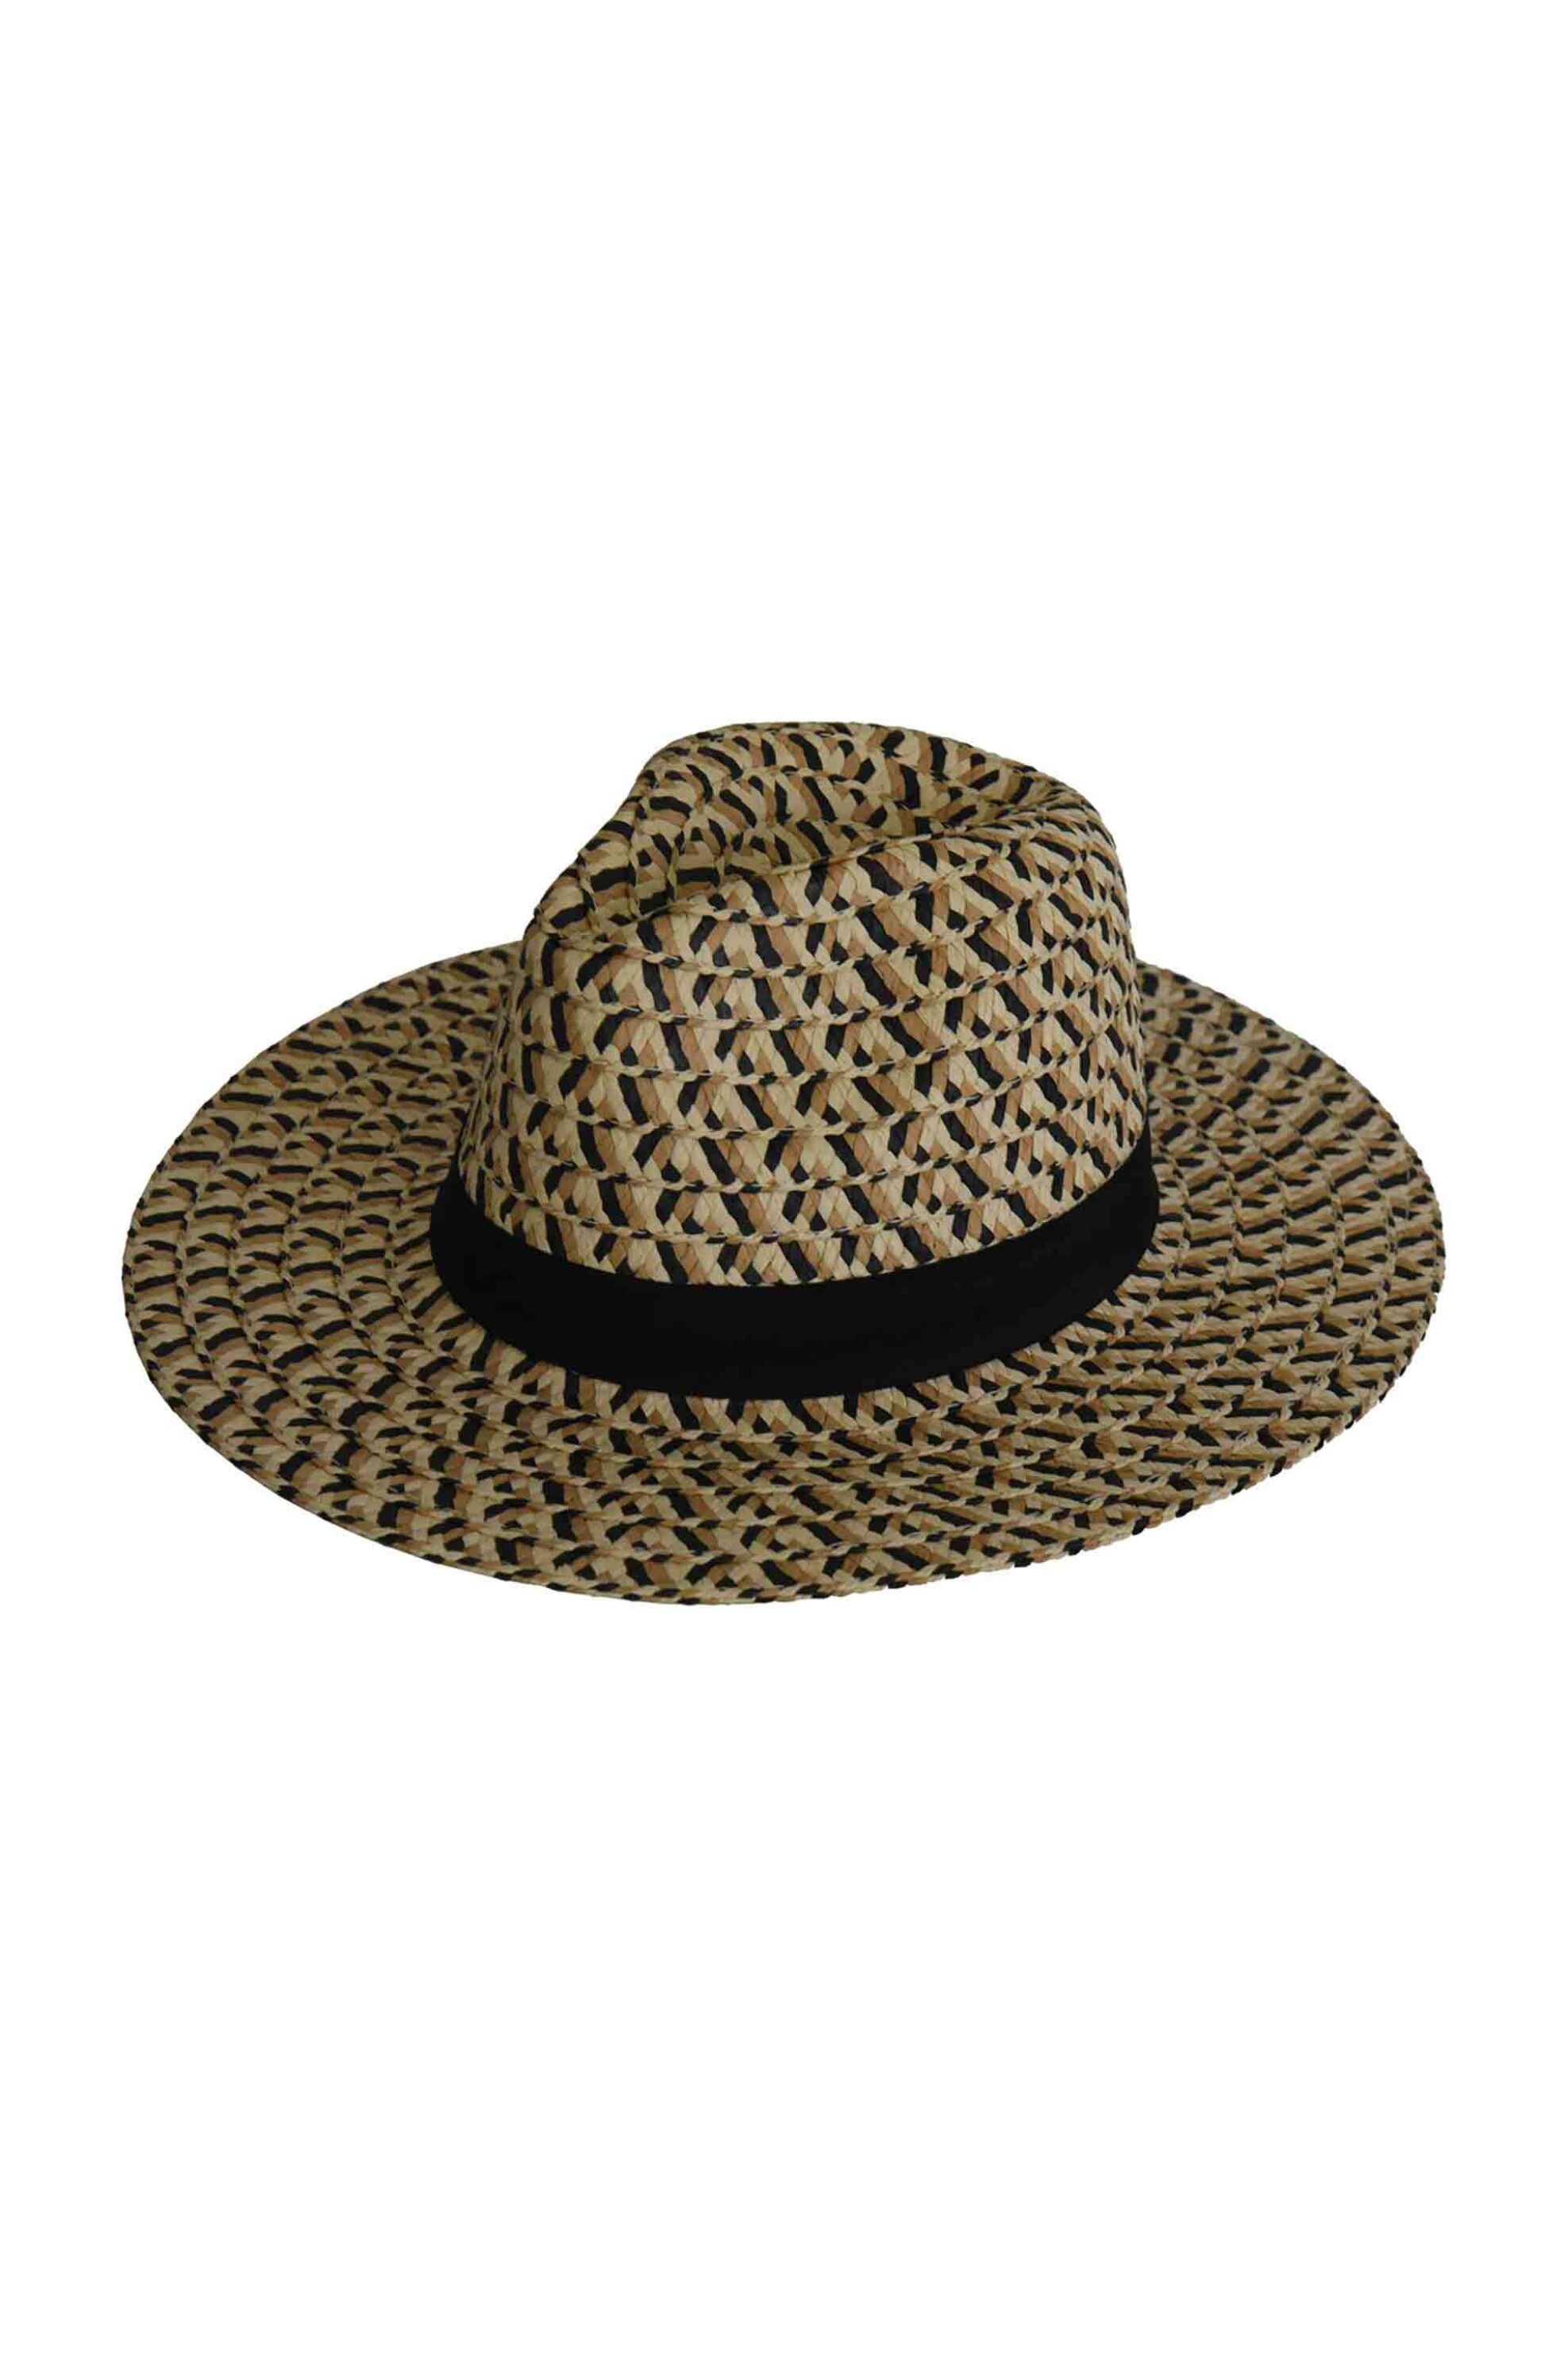 Ανδρική Μόδα > Ανδρικά Αξεσουάρ > Ανδρικά Καπέλα & Σκούφοι Lovely Hats unisex ψάθινο καπέλο με contrast prints και κορδέλα - 8-14